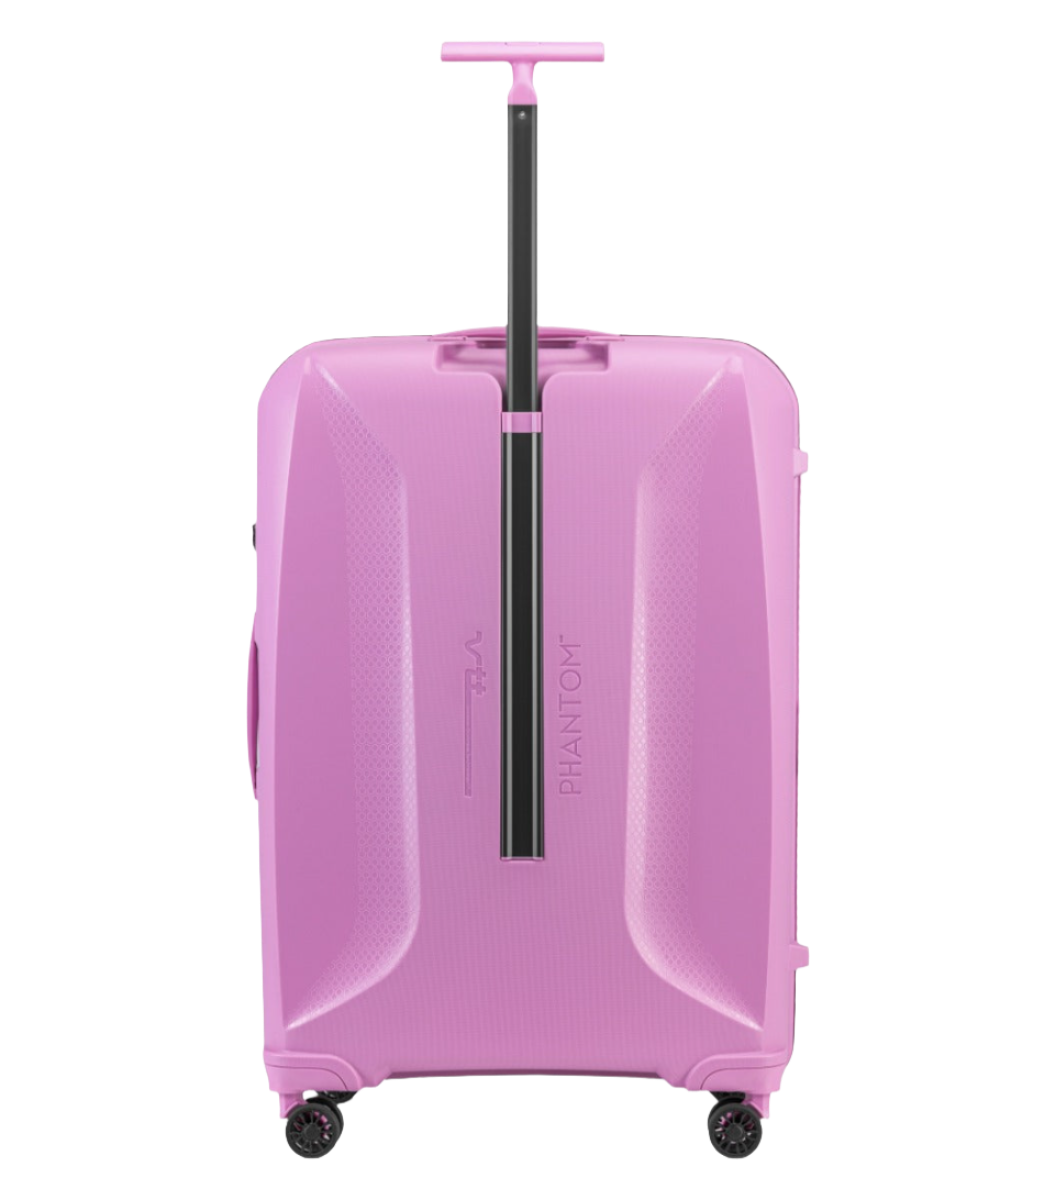 Epic Phantom pink kuffert fra siden, bagfra